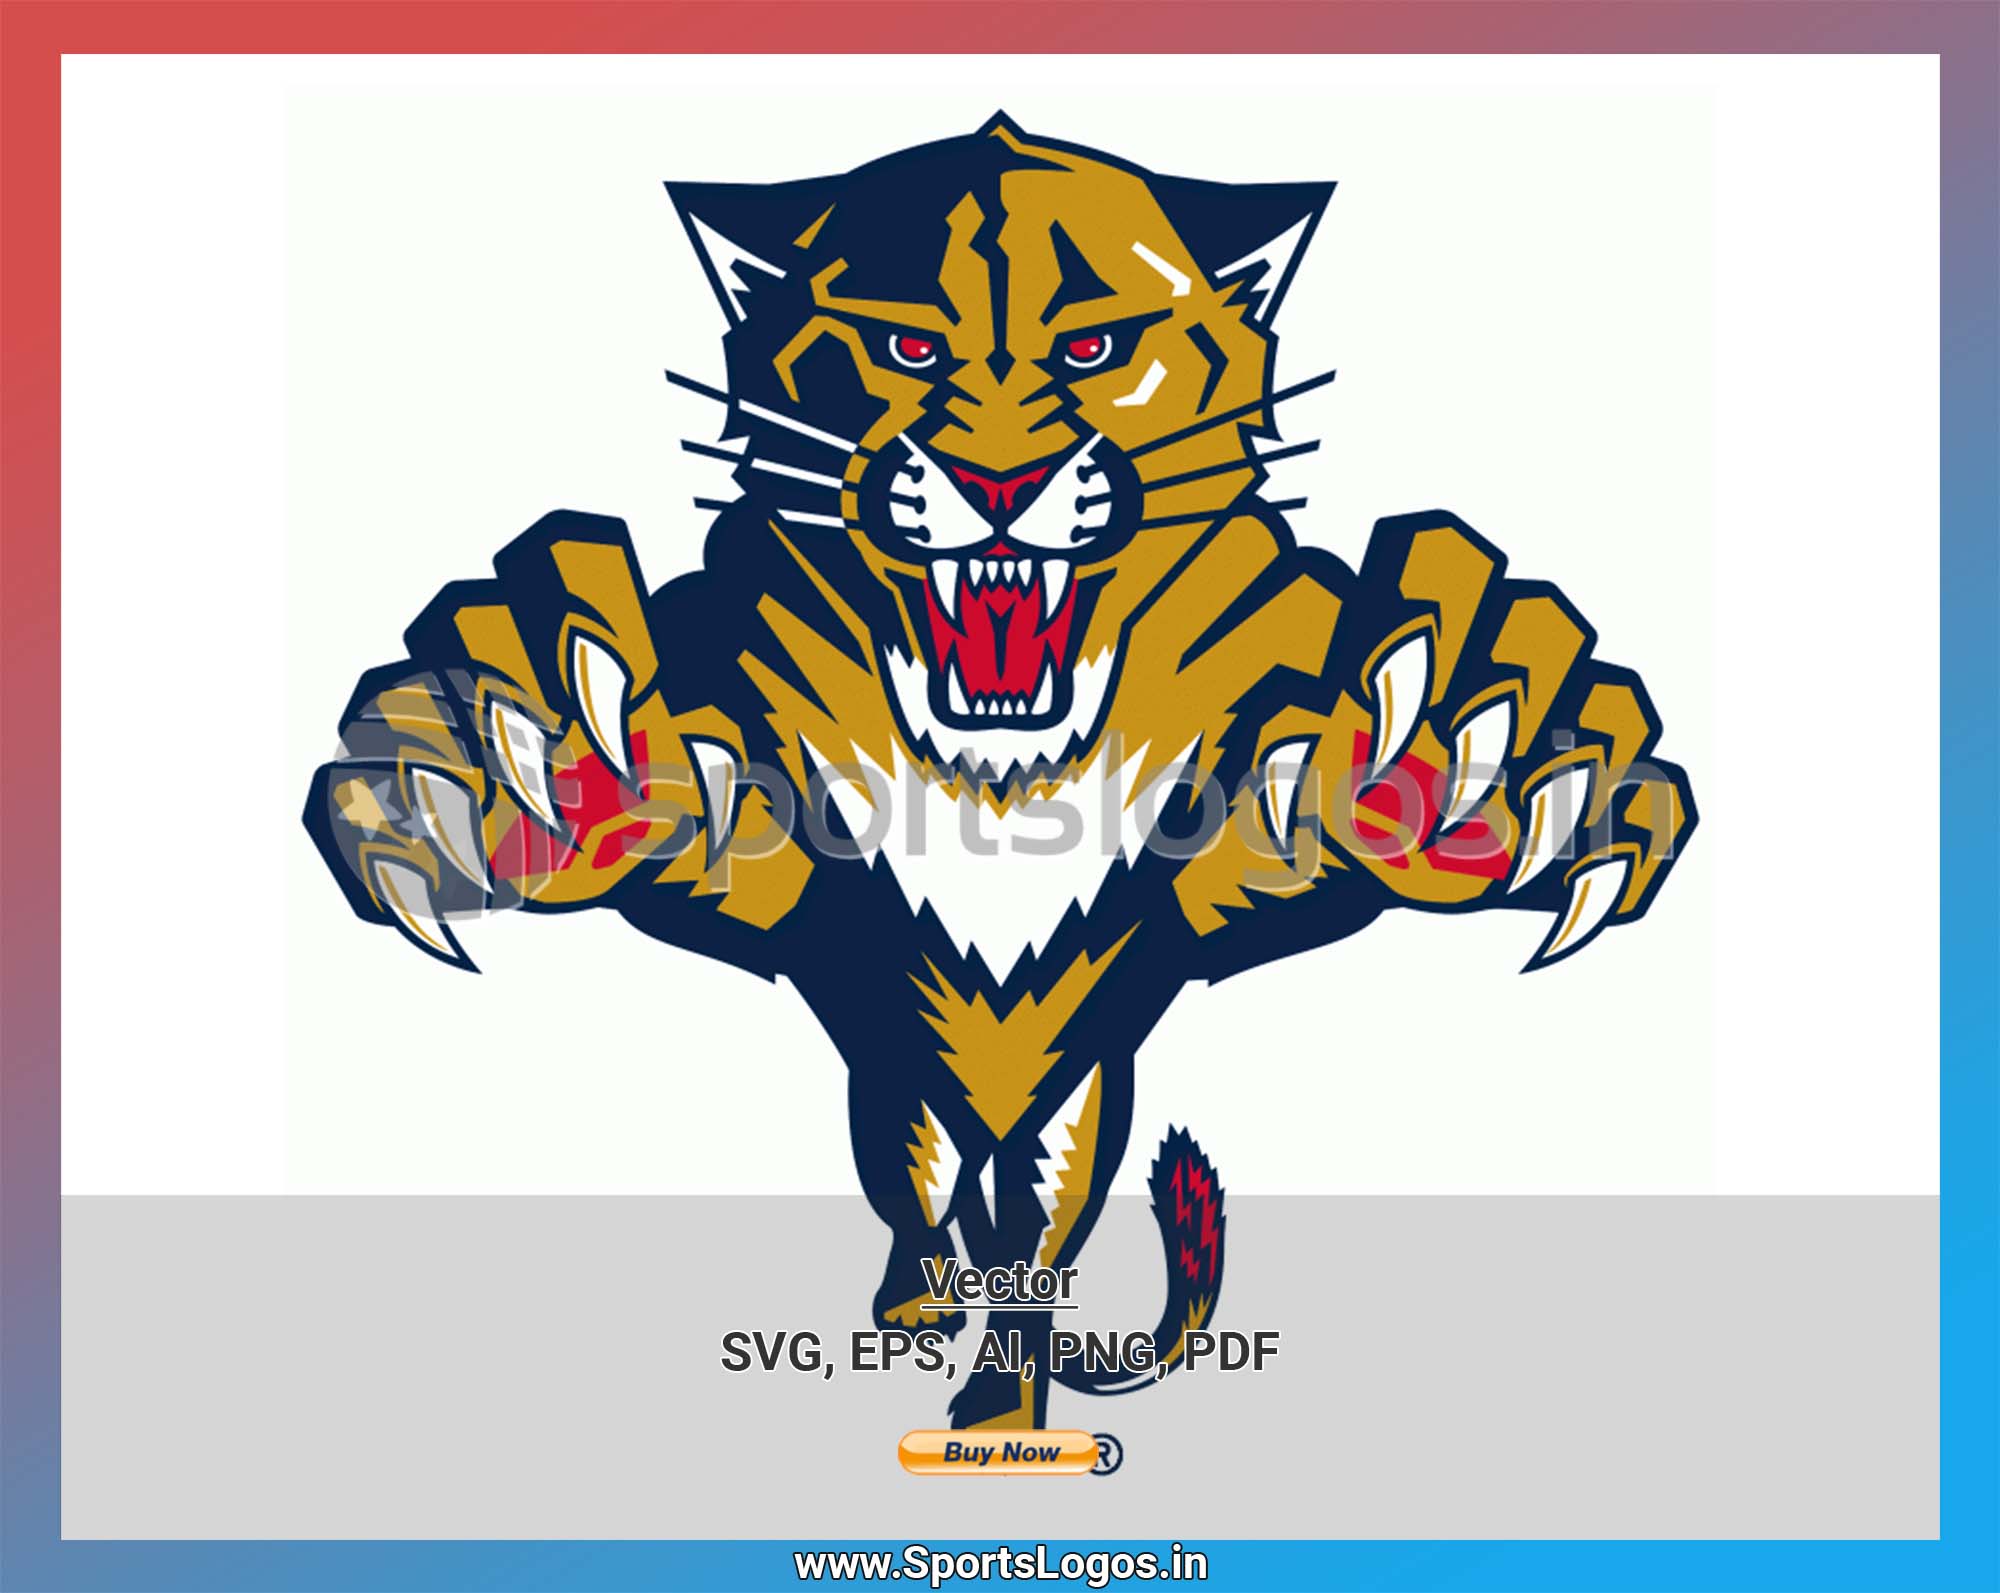 NHL Florida Panthers, Florida Panthers SVG Vector, Florida